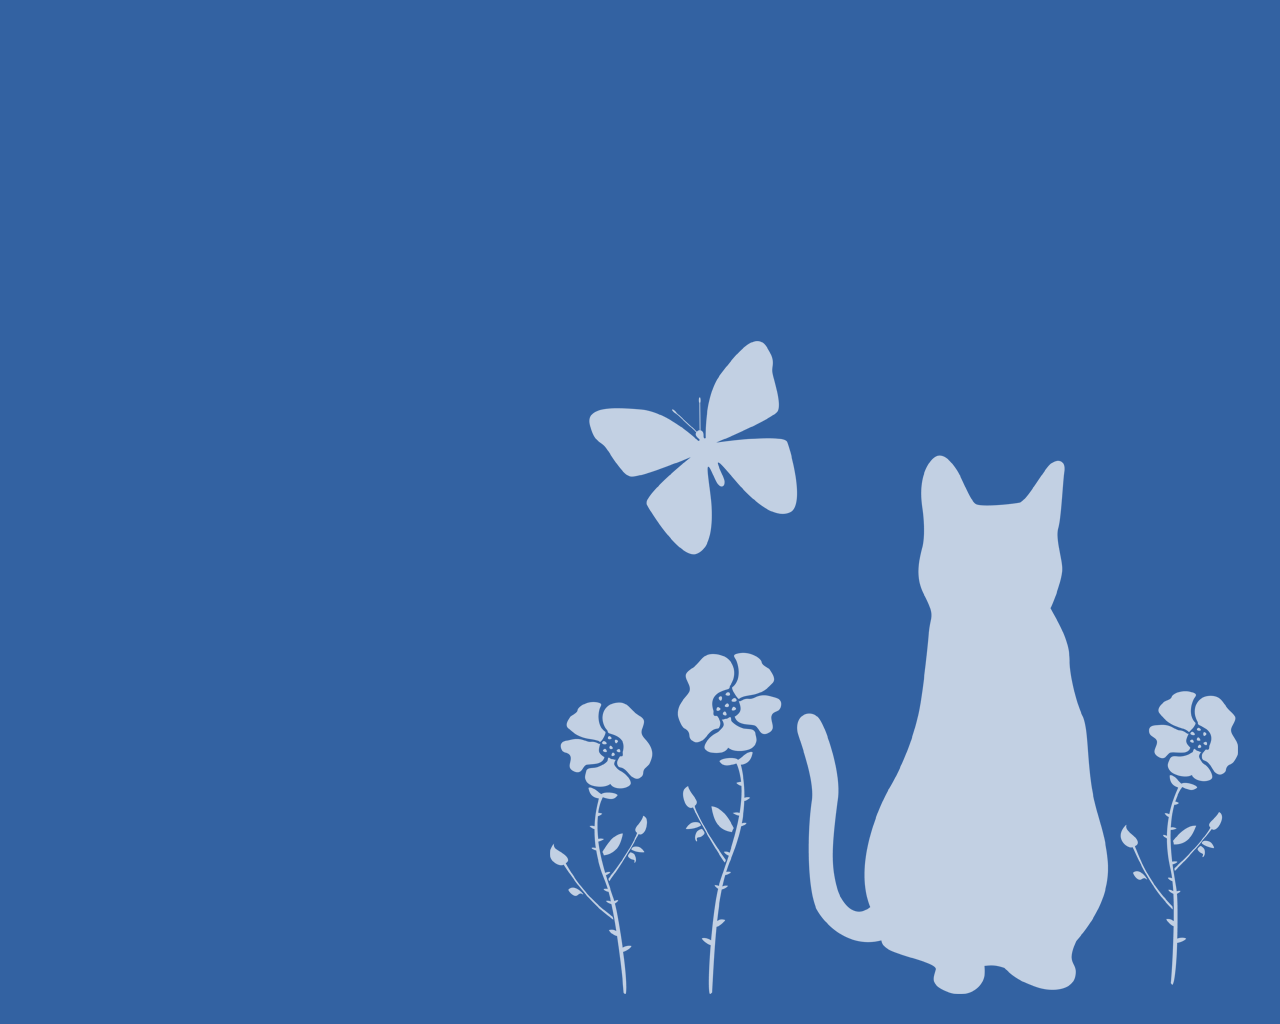 猫壁紙 猫と蝶と花と 白シルエット1280 1024 商用利用可 無料 猫素材 猫イラスト にゃいちもん